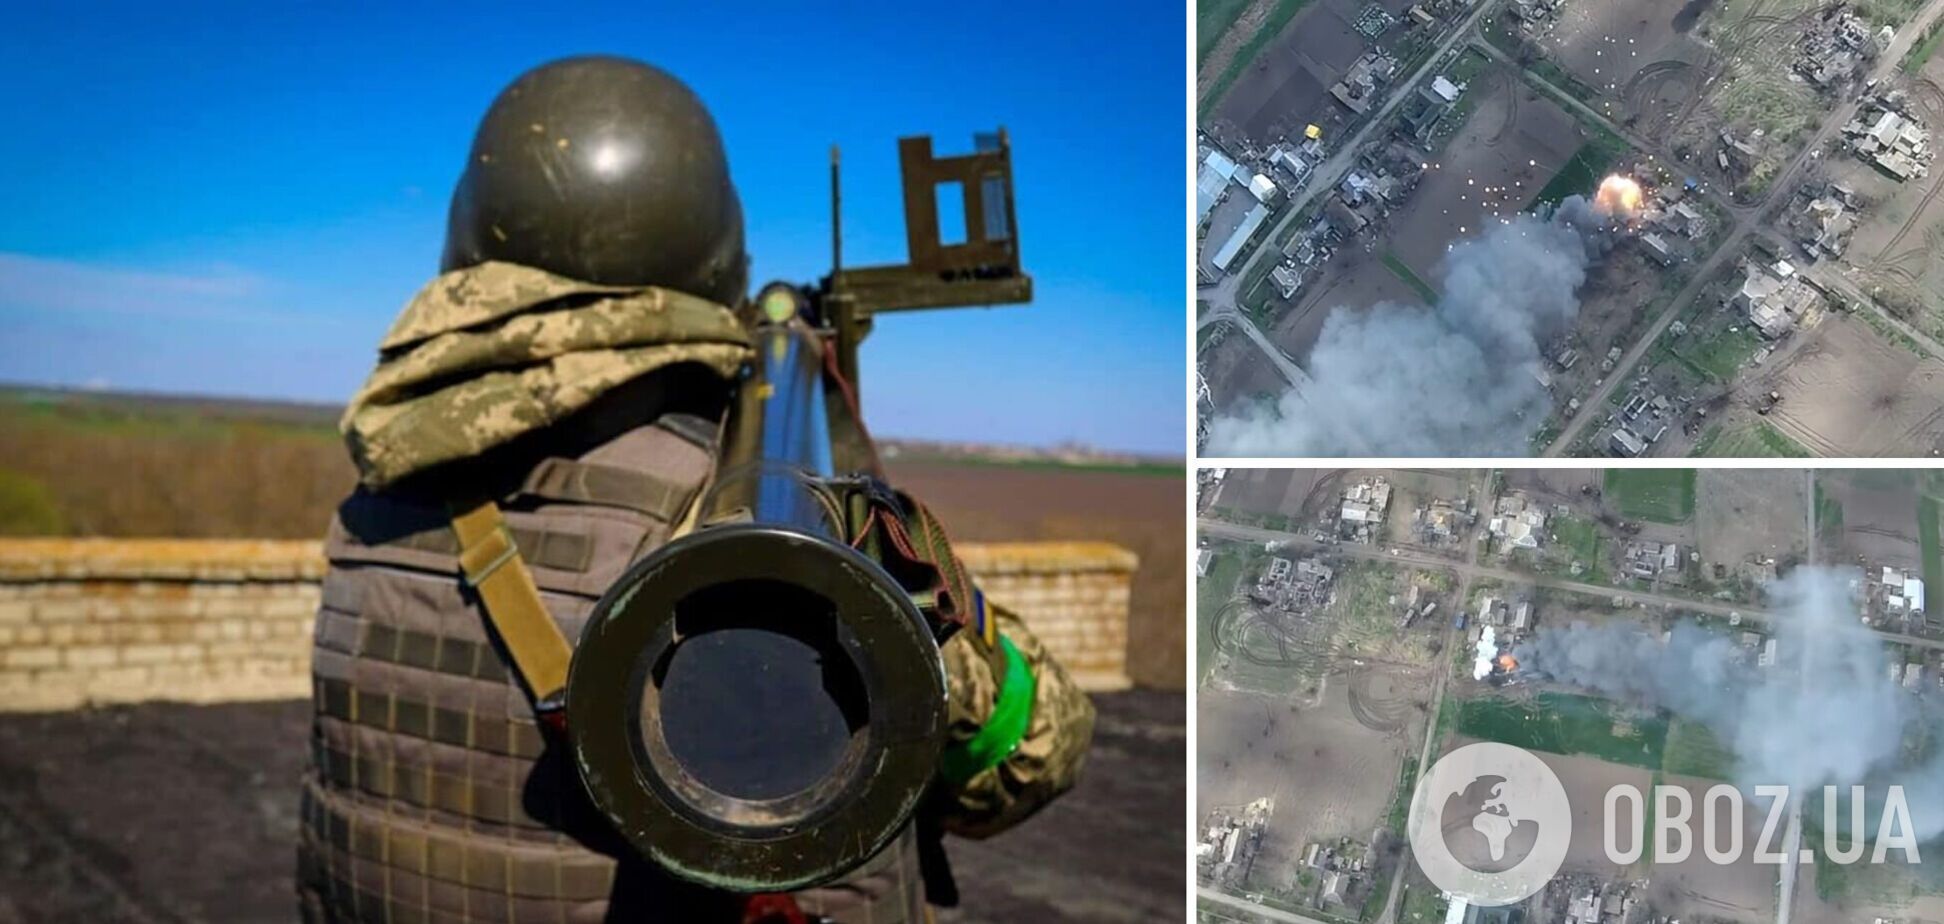 Взрывалось долго и красиво: украинские военные уничтожили запас боеприпасов оккупантов. Видео